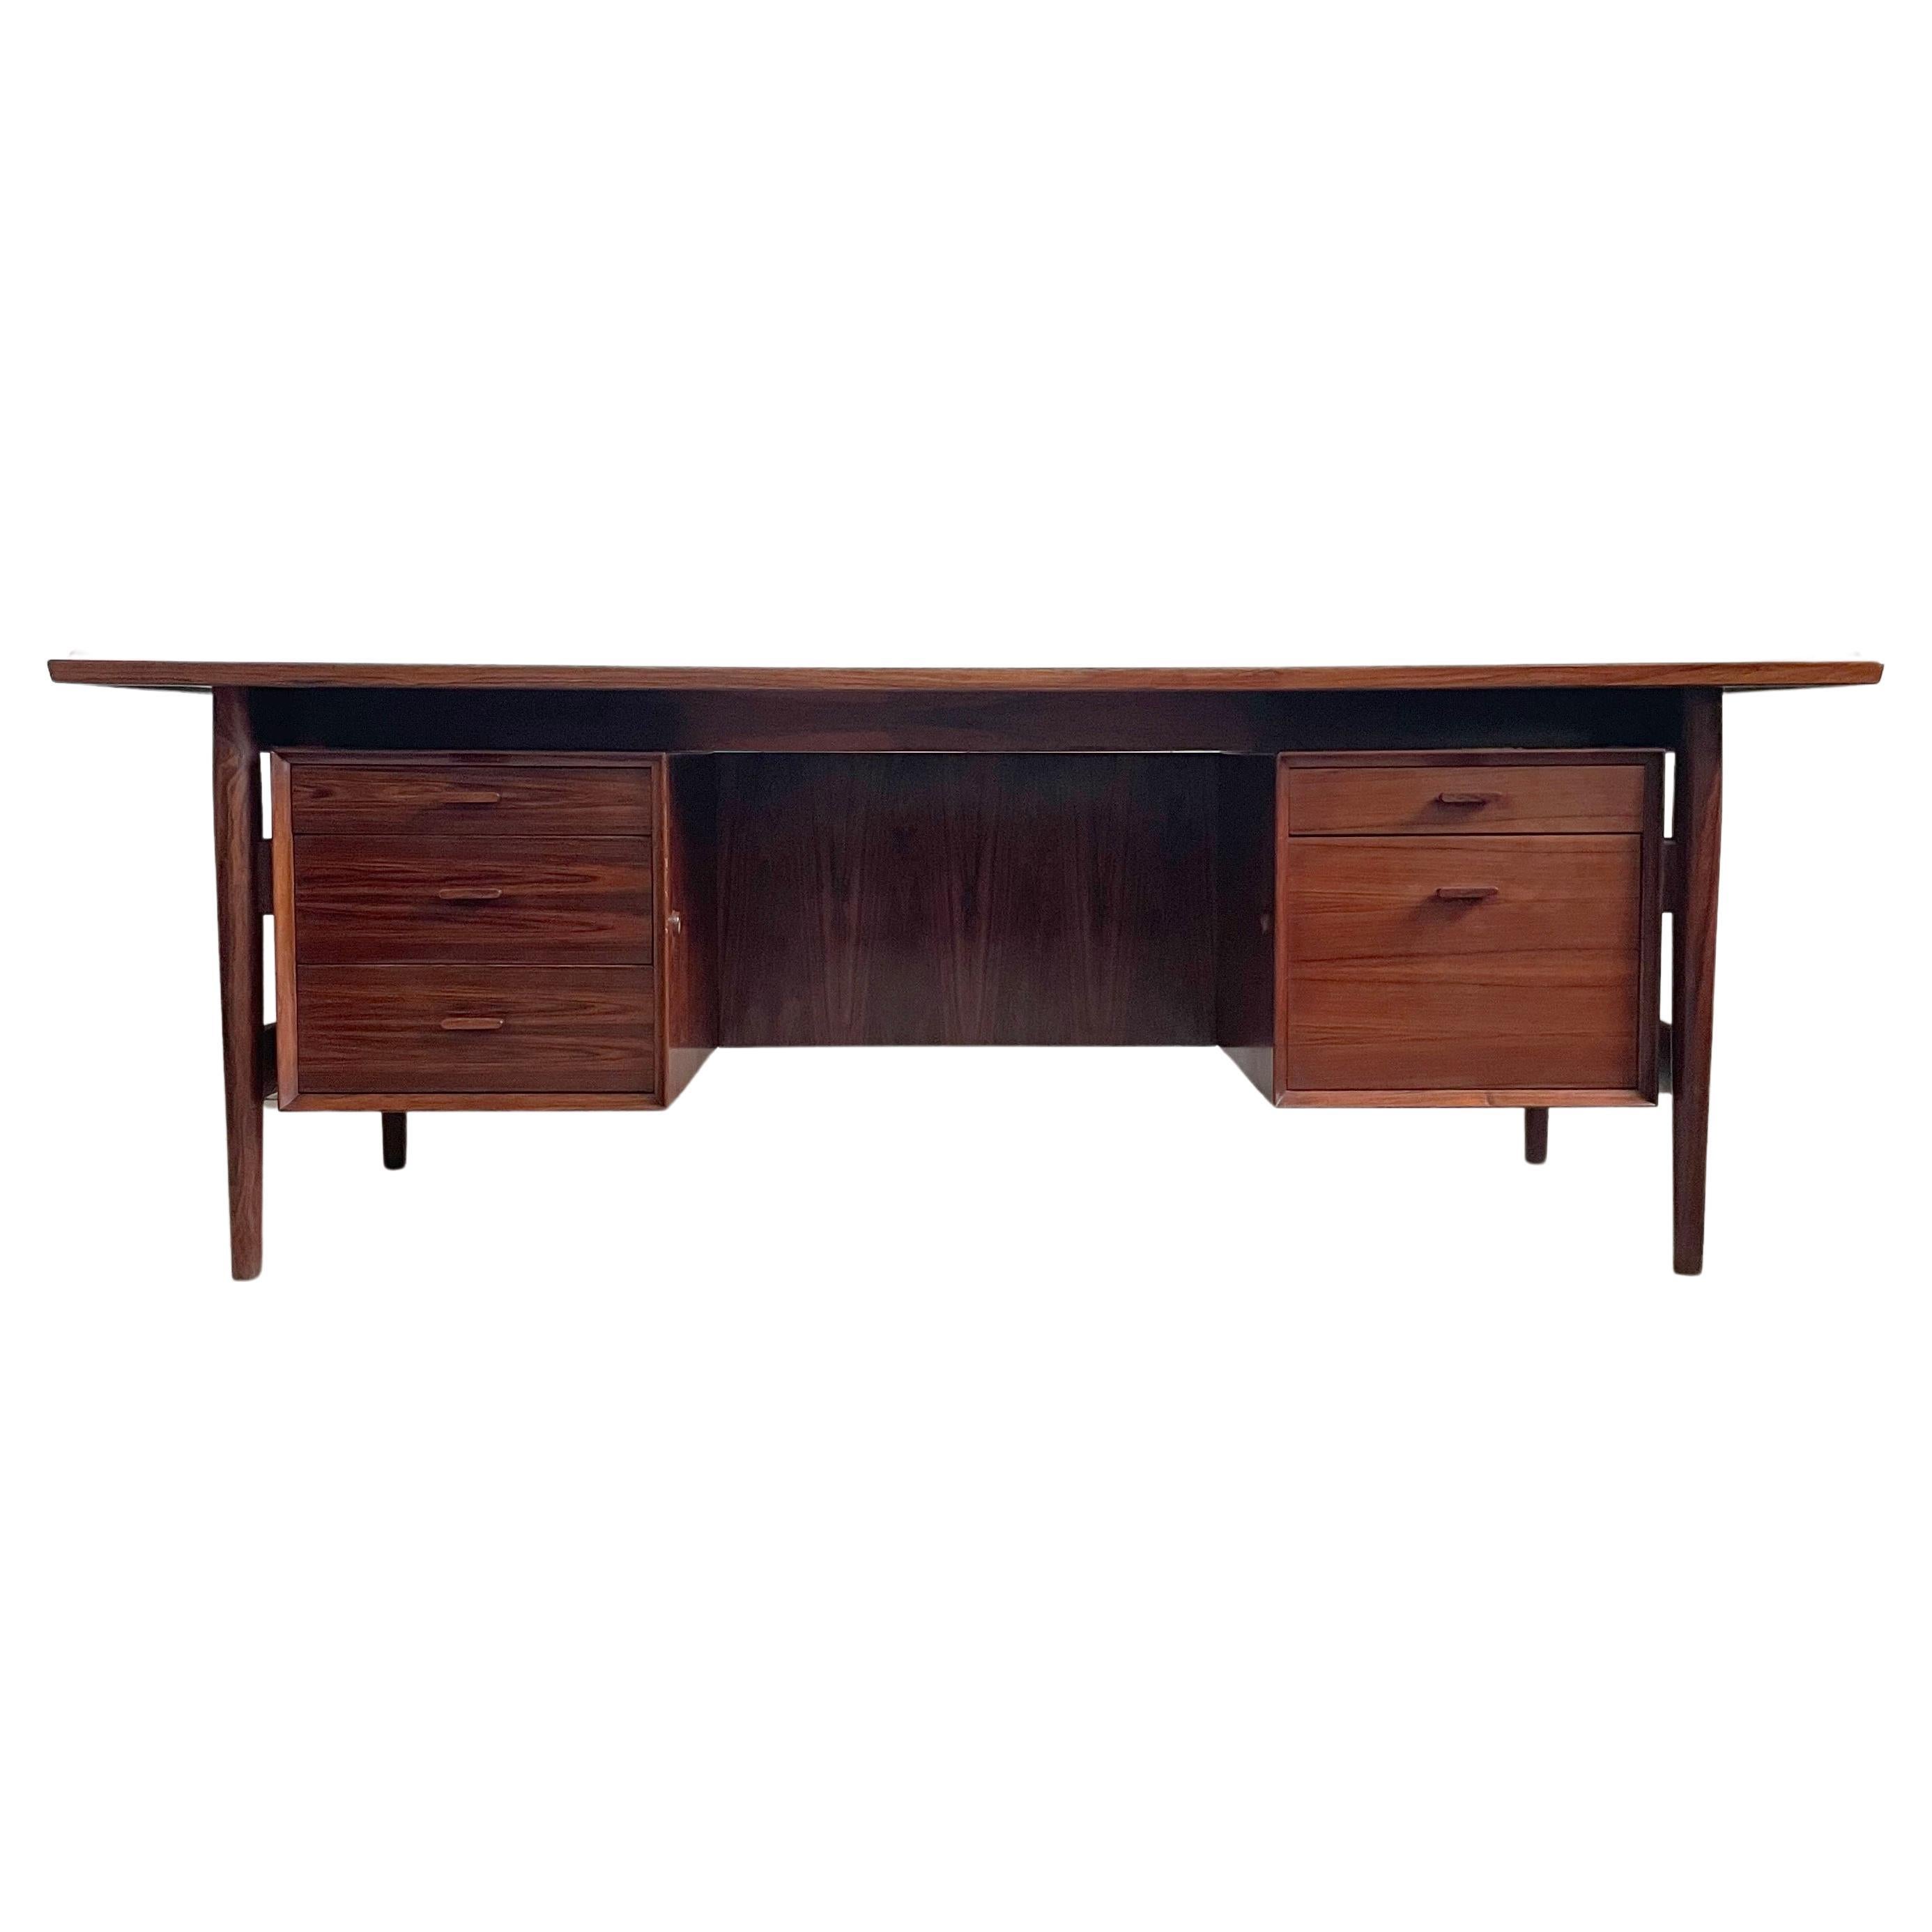 Der Schreibtisch Modell 207 von Arne Vodder ist ein bekannter Klassiker der dänischen Moderne und sehr begehrt.
Hergestellt von Sibast in den 1960er Jahren.

Der Schreibtisch ist aus massivem Holz gefertigt, meist aus exotischem brasilianischem oder